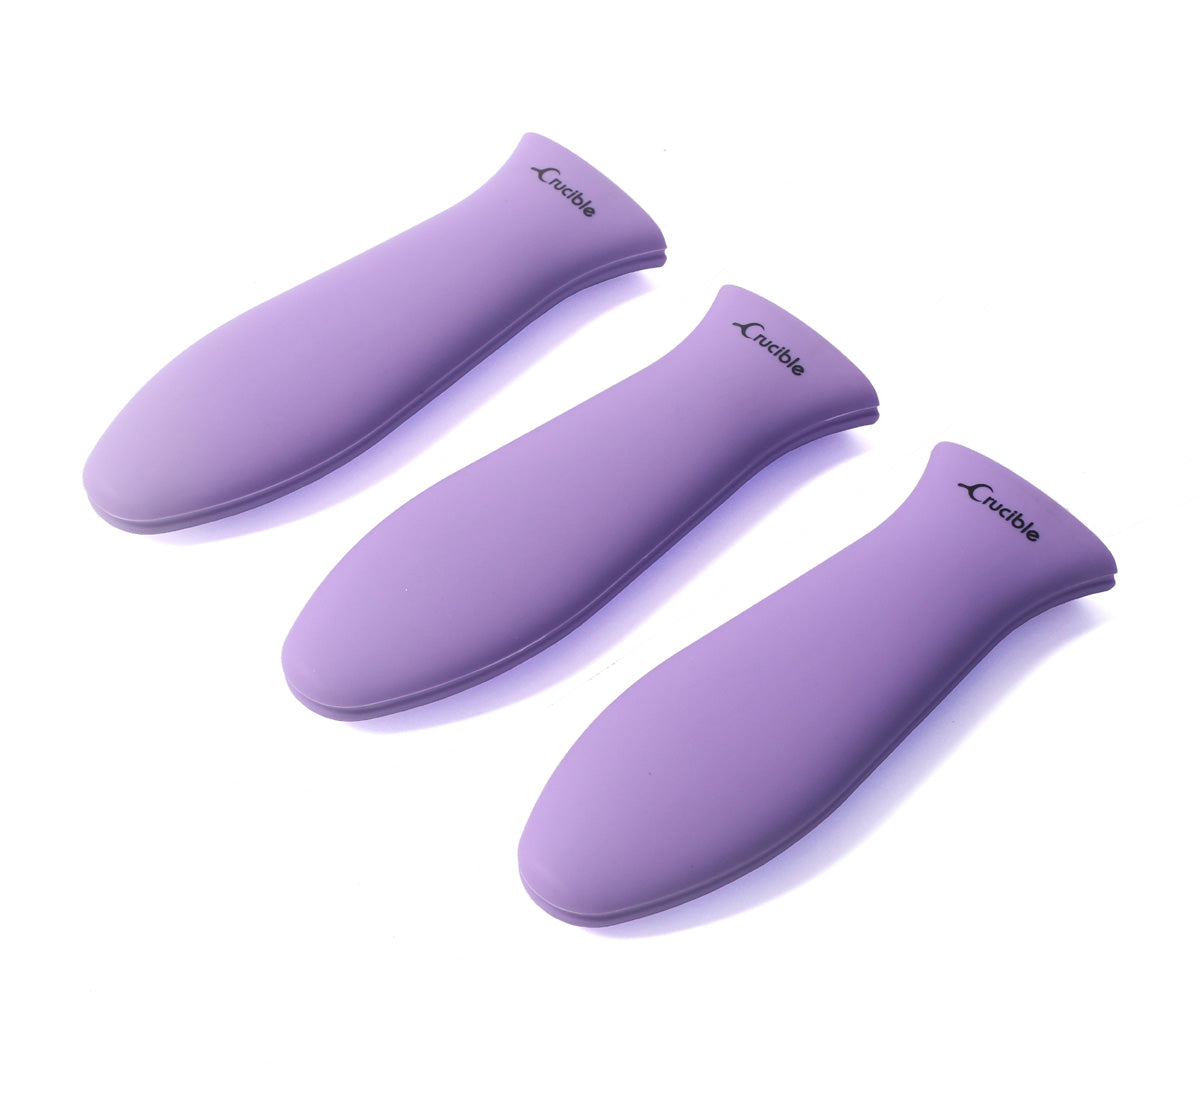 Support de poignée chaude en silicone, manique (violet grand), poignée de manche, couvercle de poignée